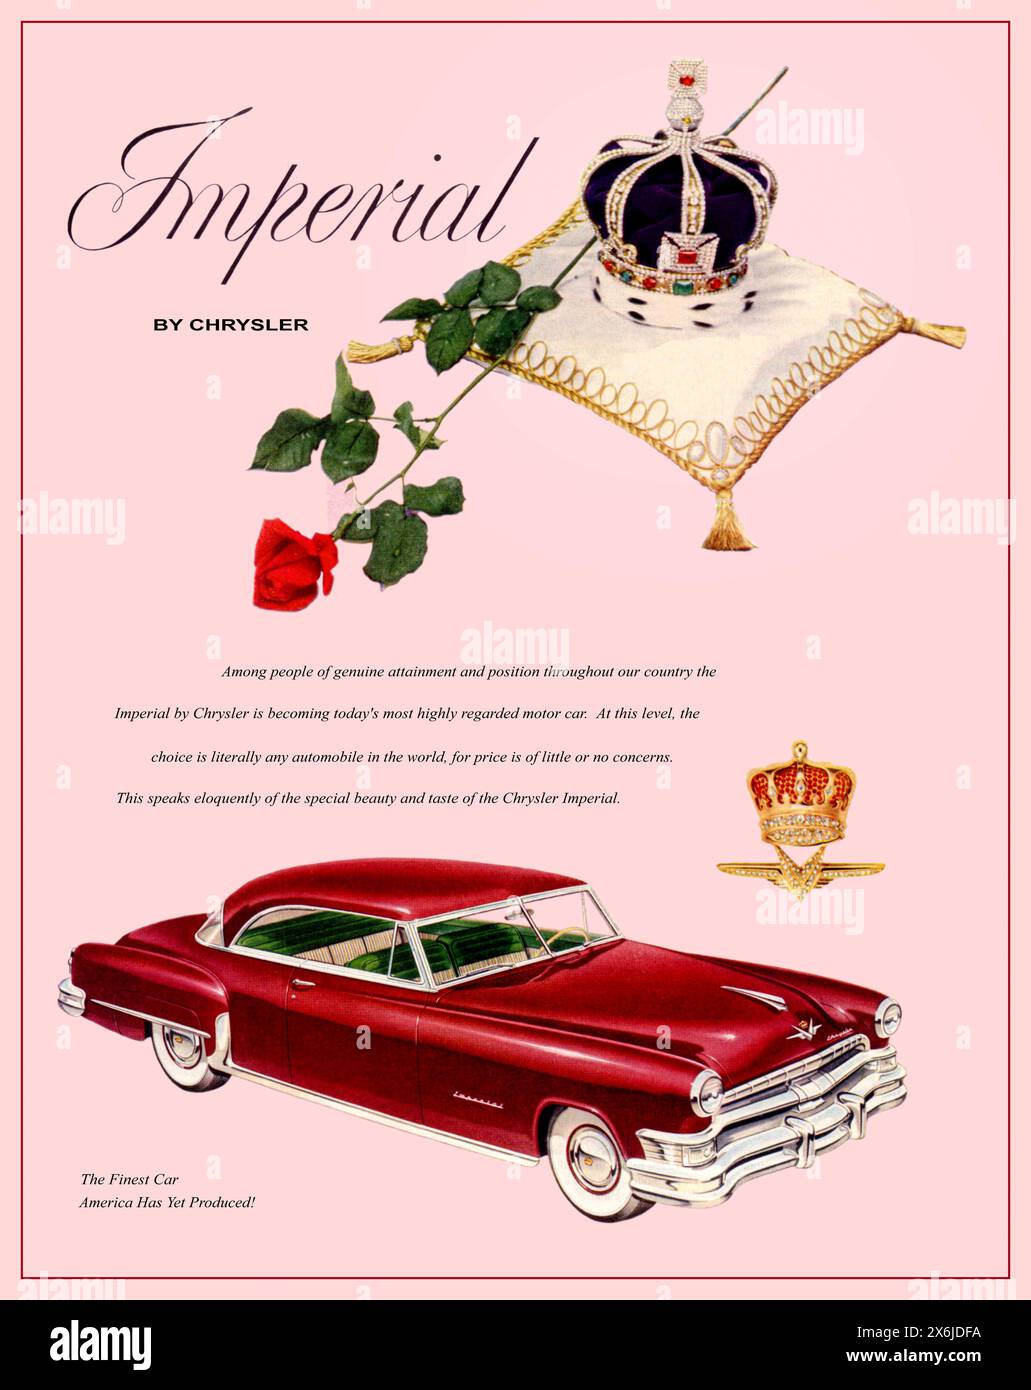 Chrysler Imperial 2 dr anni '1950, pubblicità coupé con una corona reale su un cuscino di peluche che riecheggia l'incoronazione britannica nel 1953 della regina Elisabetta II. Chrysler Corporation USA America 1952 Foto Stock